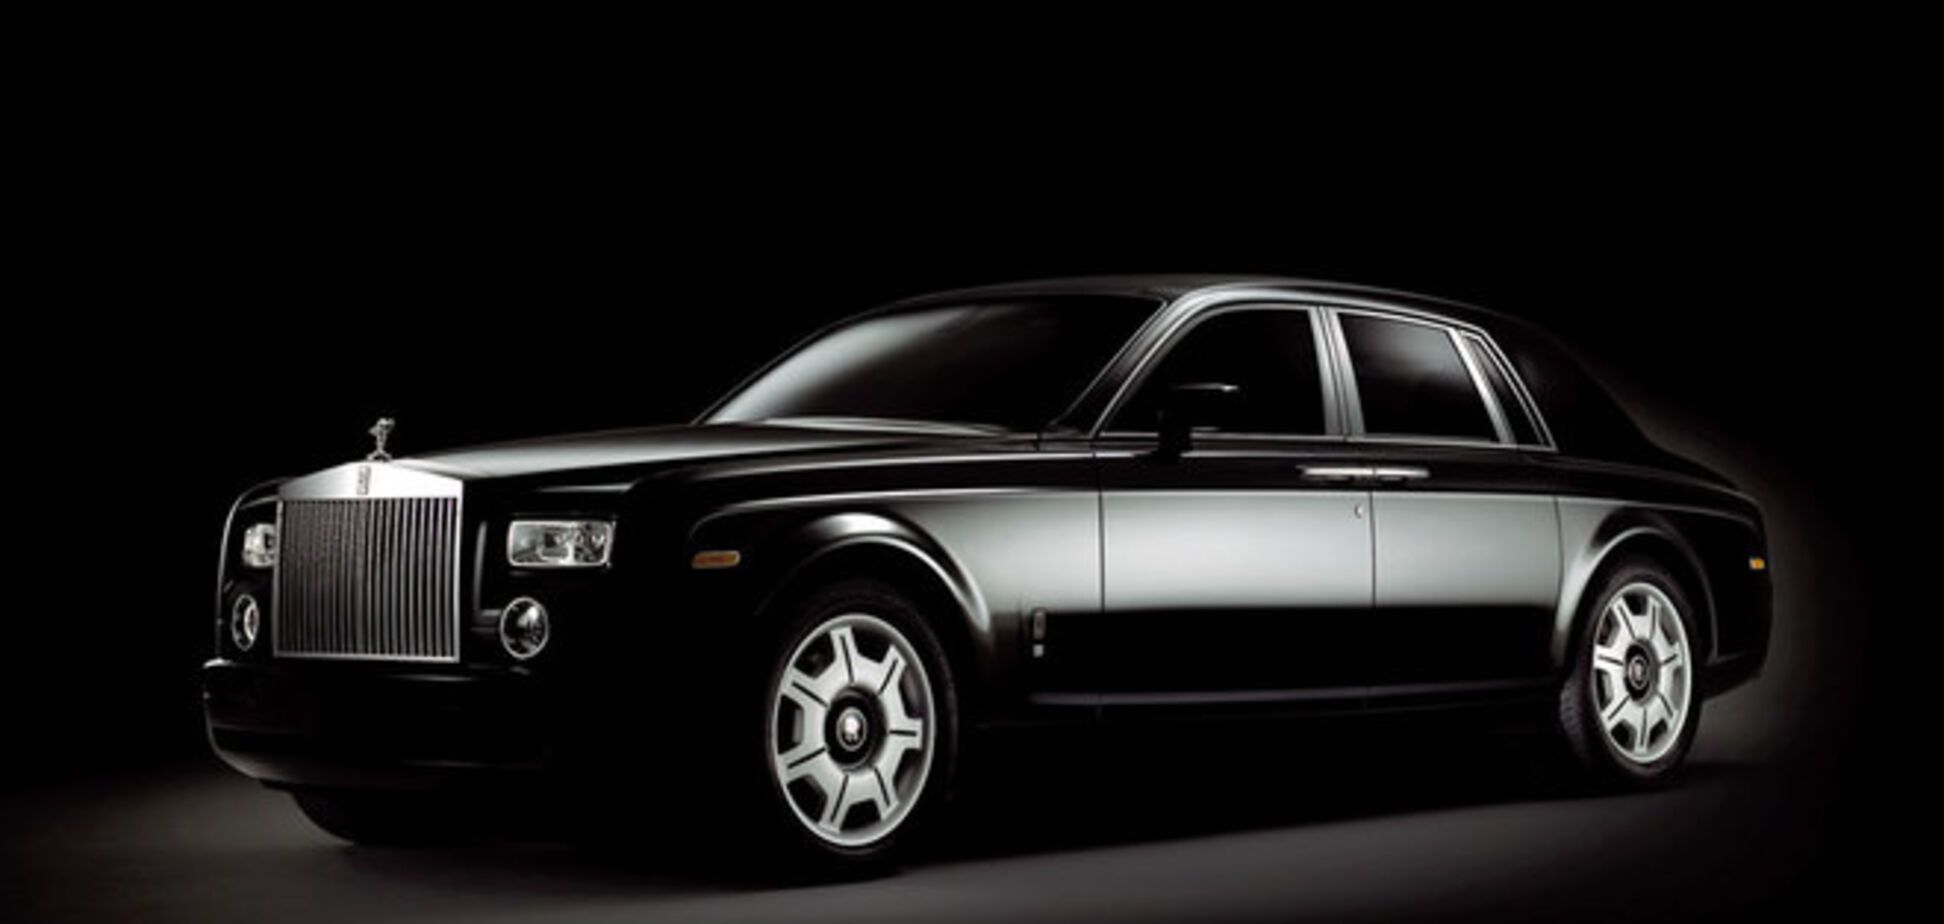 Миллионер продал Rolls Royce за 2,5 млн грн для поддержки армии Украины